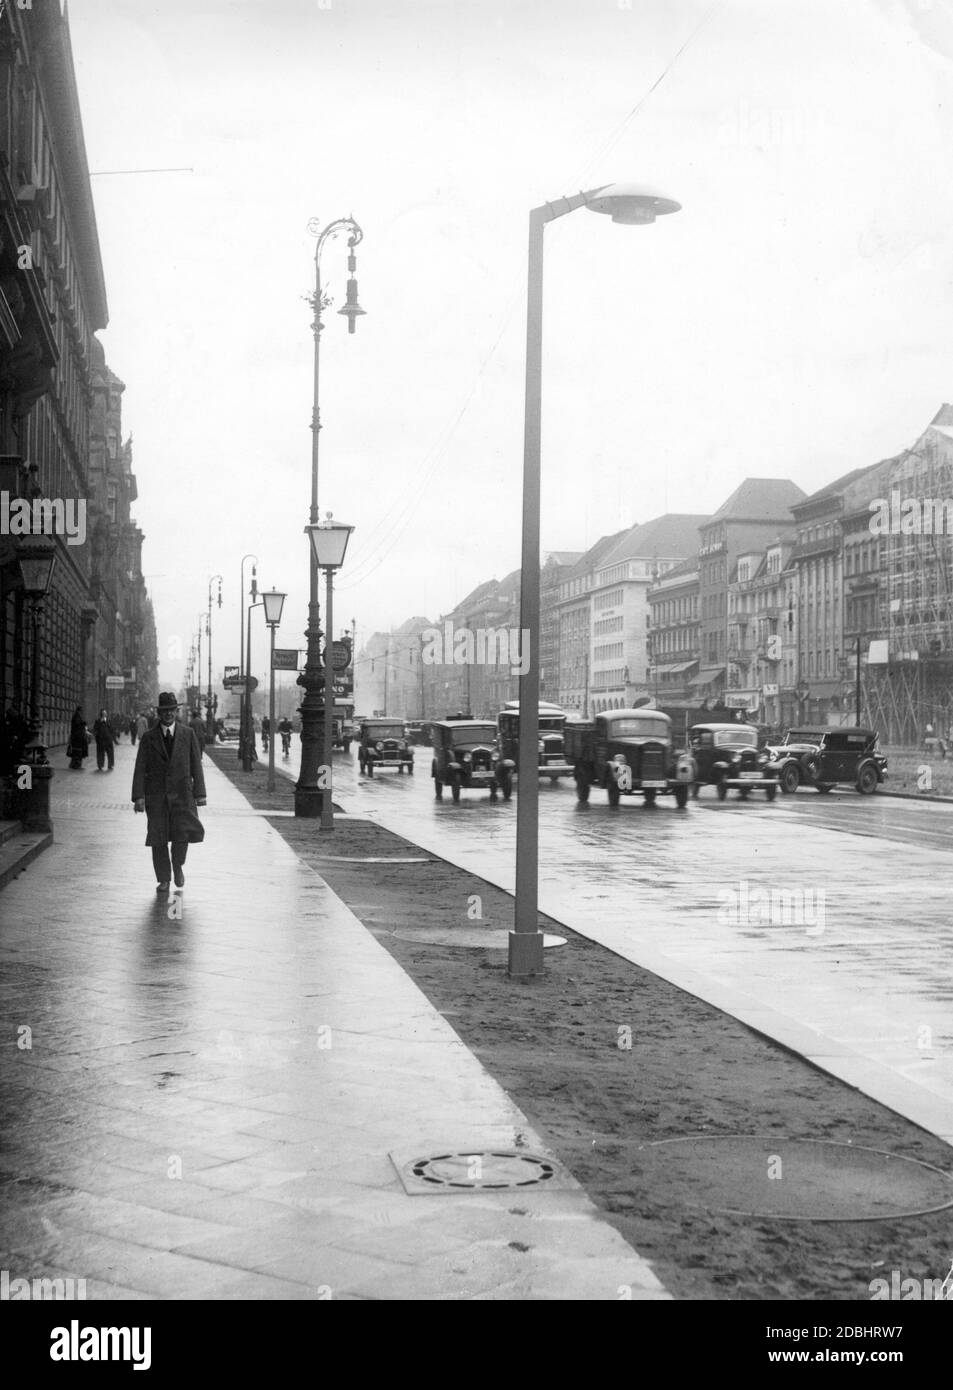 Im Jahr 1936 wurden auf einem Abschnitt der Straße unter den Linden in Berlin verschiedene Straßenlampen angebracht, um festzustellen, welche Lampe am besten für die Straßenbeleuchtung geeignet war. Stockfoto